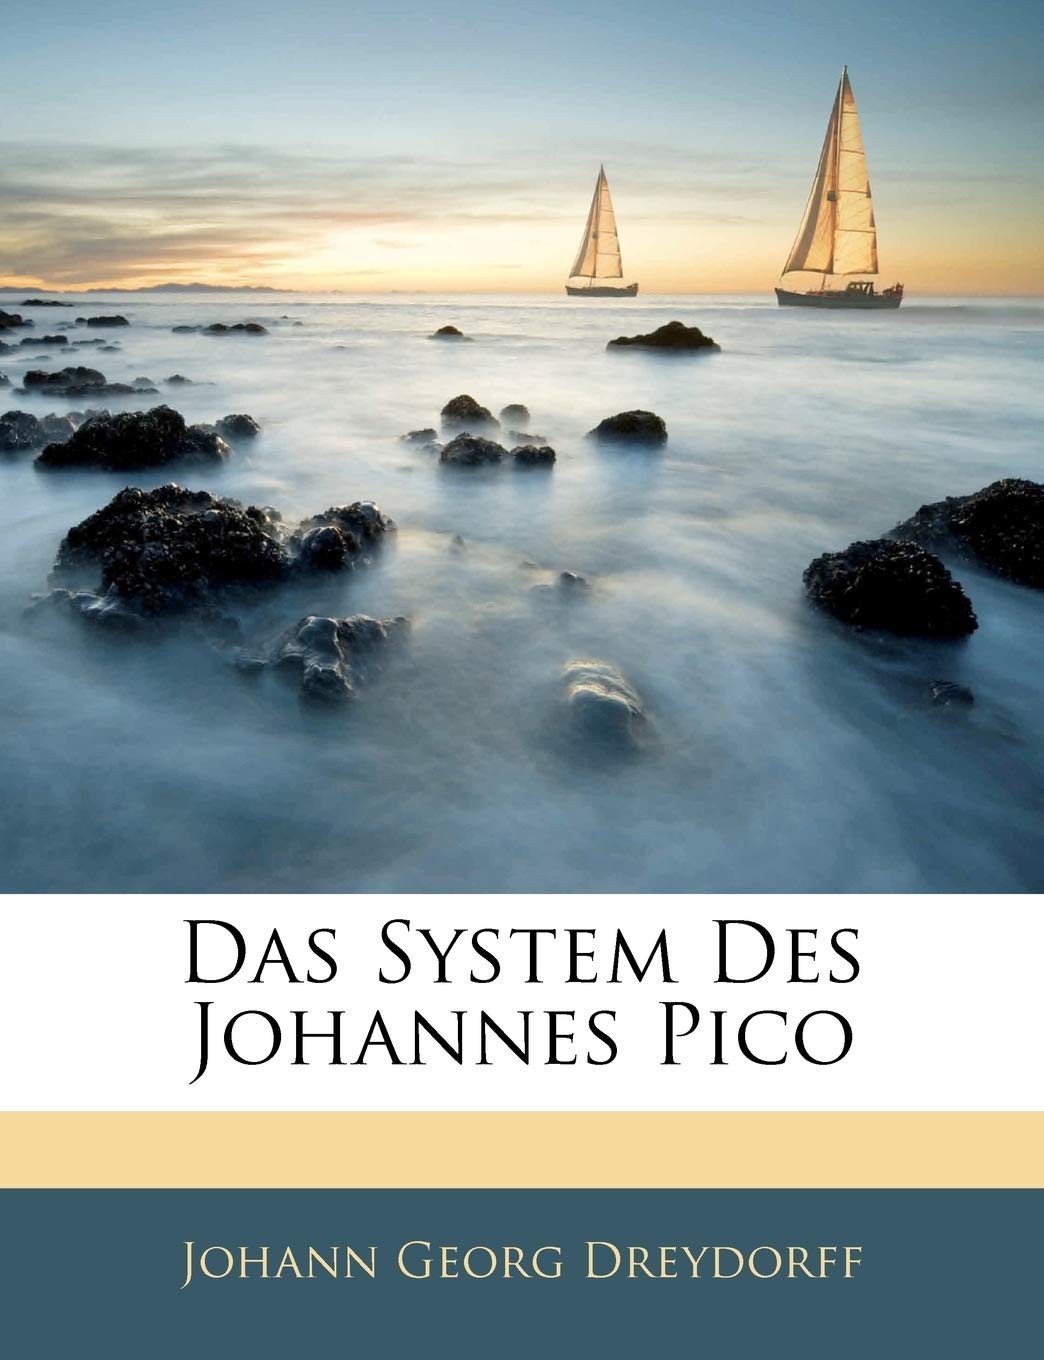 Das System des Johannes Pico